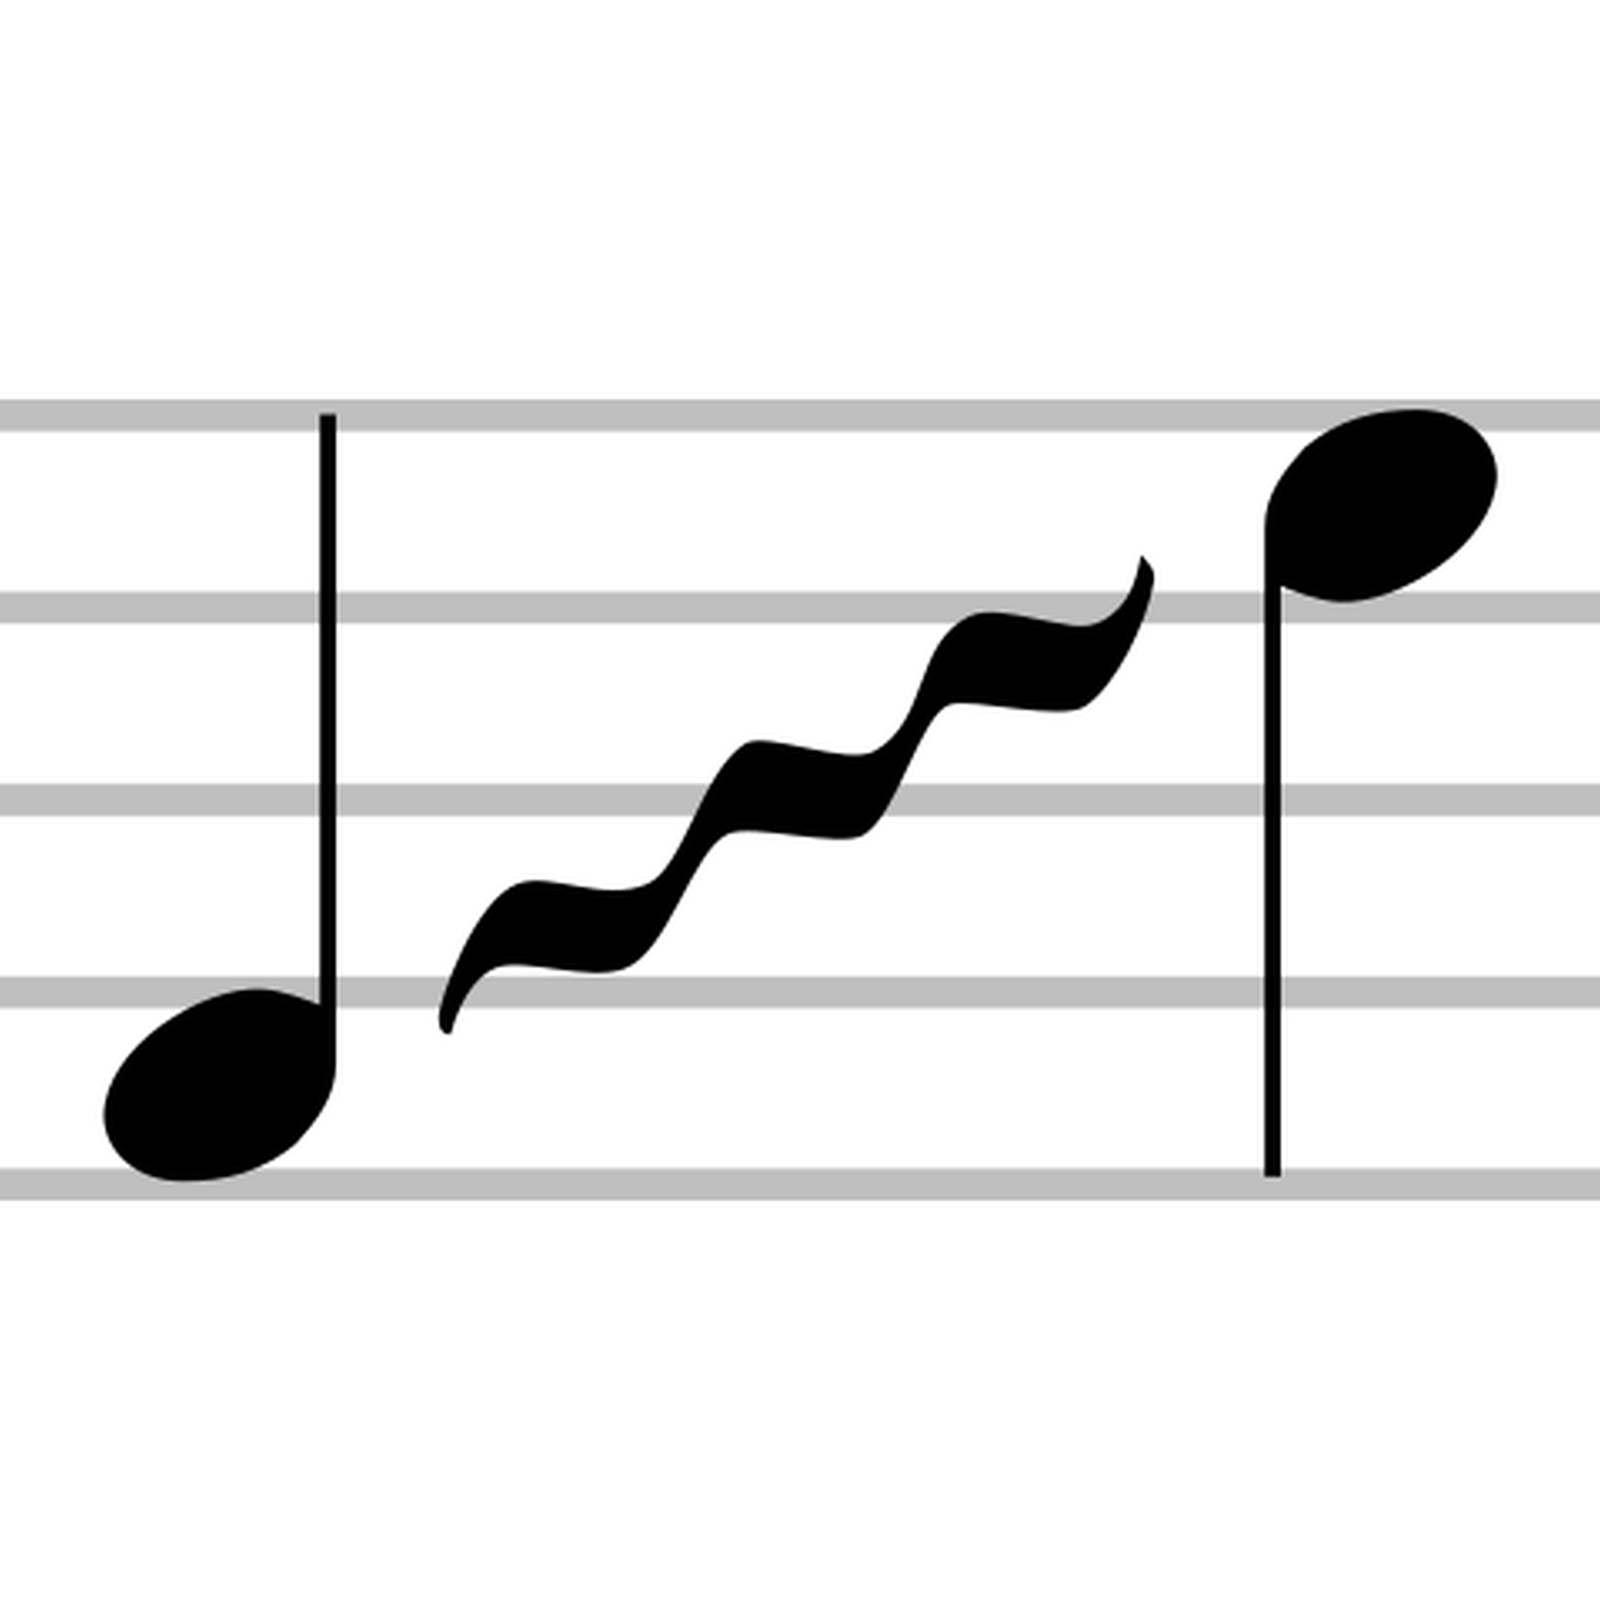 Na ilustracji dwie nuty jedna na pierwszym polu pięciolinii druga na 4 polu pięciolinii, między nutami znajduje się zygzakowata linia oznaczająca glissando.